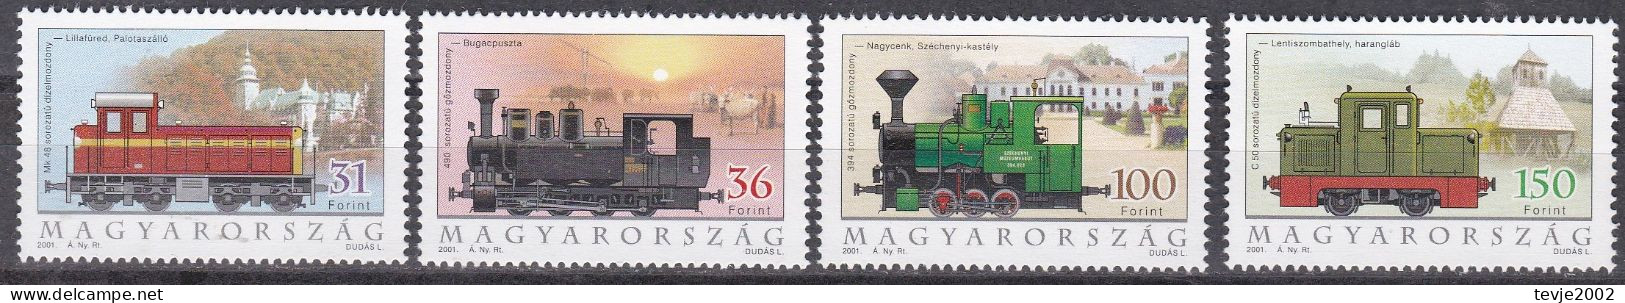 Ungarn 2001 - Mi.Nr. 4662 - 4665 - Postfrisch MNH - Eisenbahnen Railways Lokomotiven Locomotives - Treni